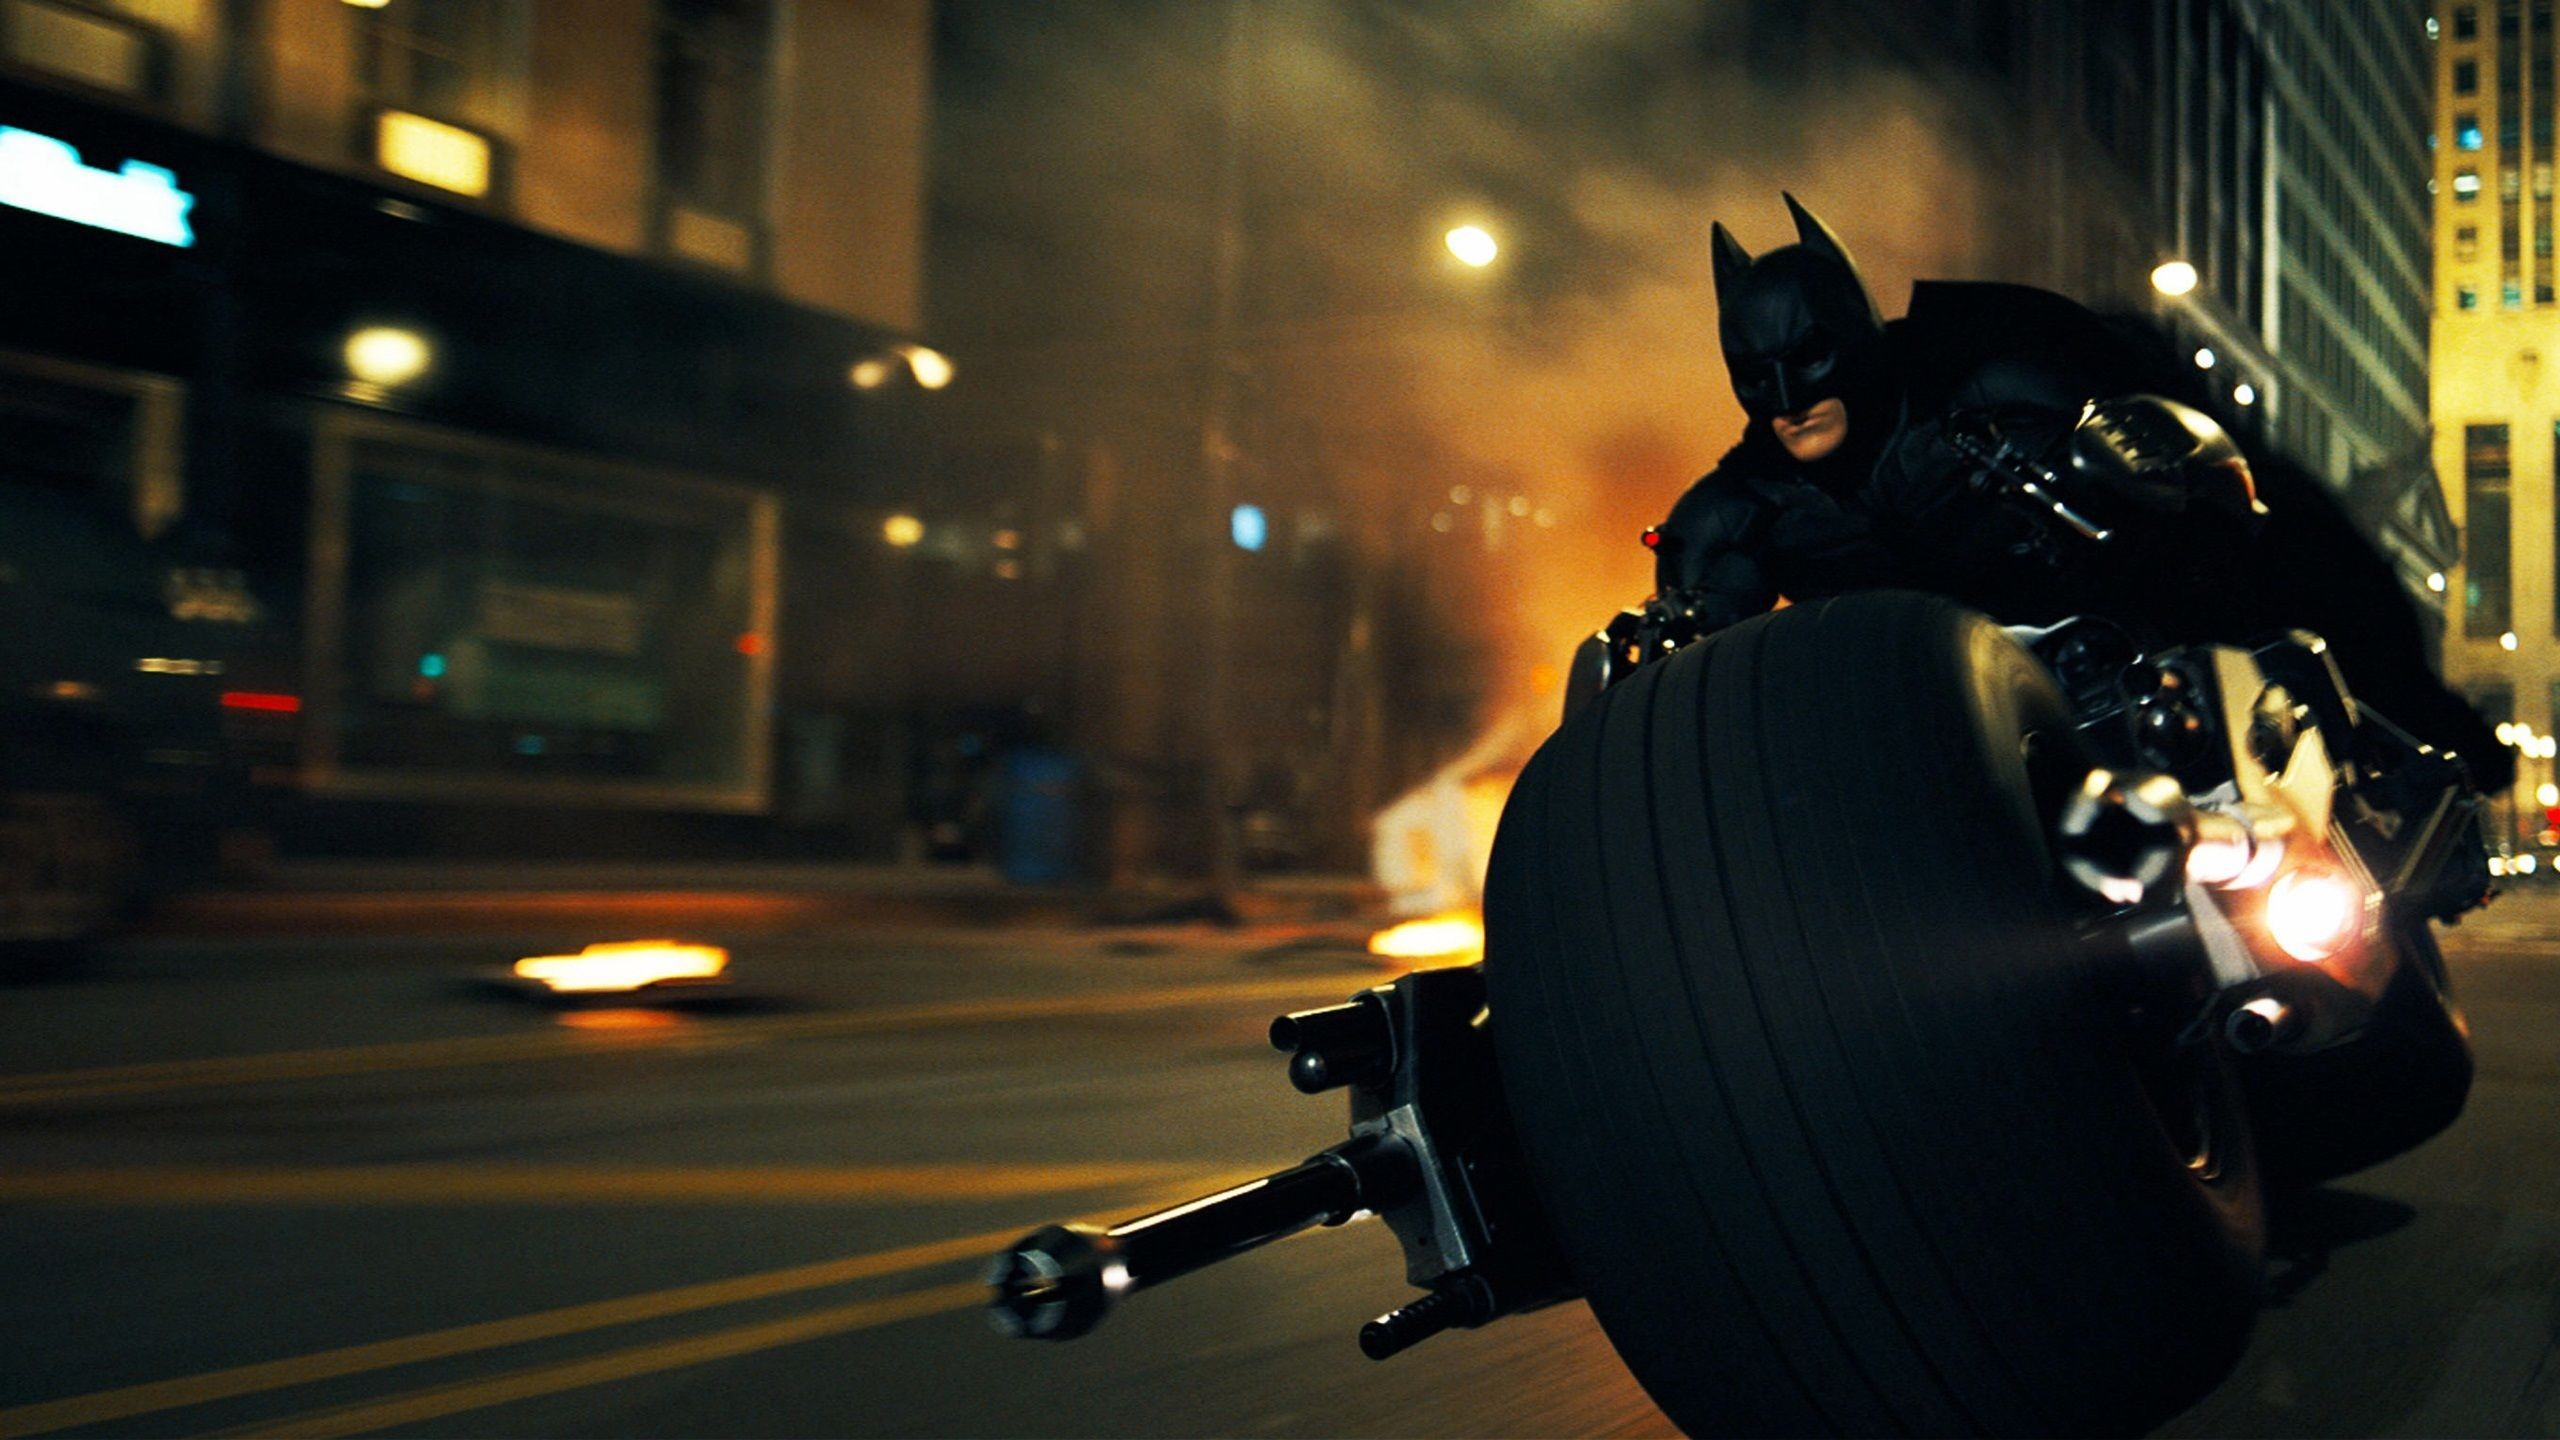 2560x1440 Batman in Dark Knight Rises Wallpapers Batman in Dark Knight Rises  Wallpapers | HD Wallpapers